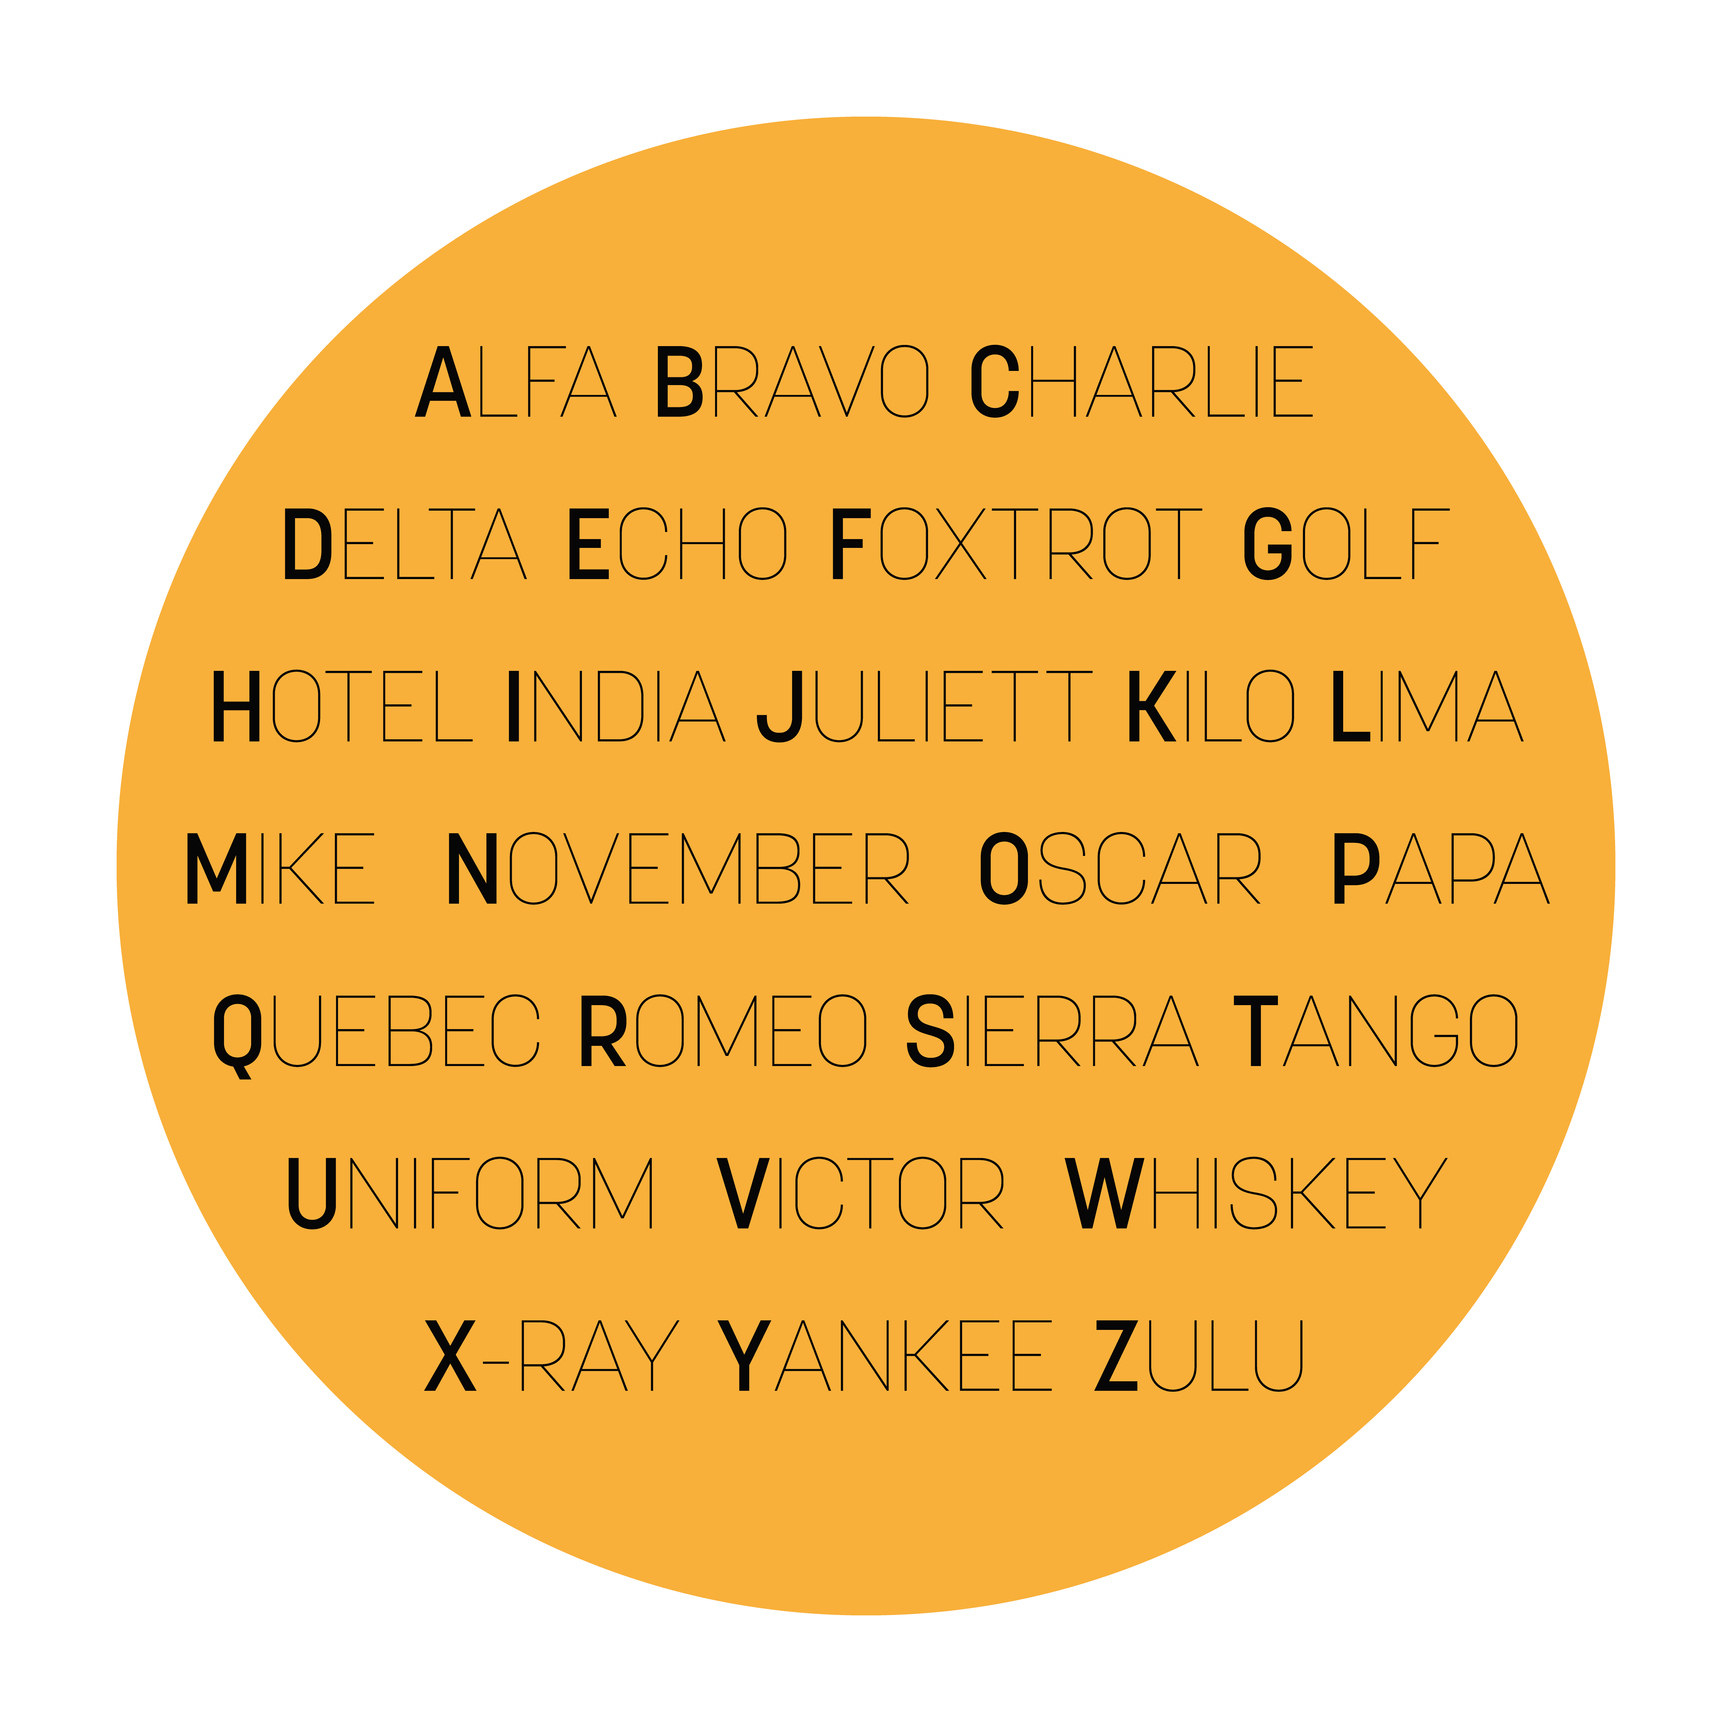 The NATO alphabet in a circle